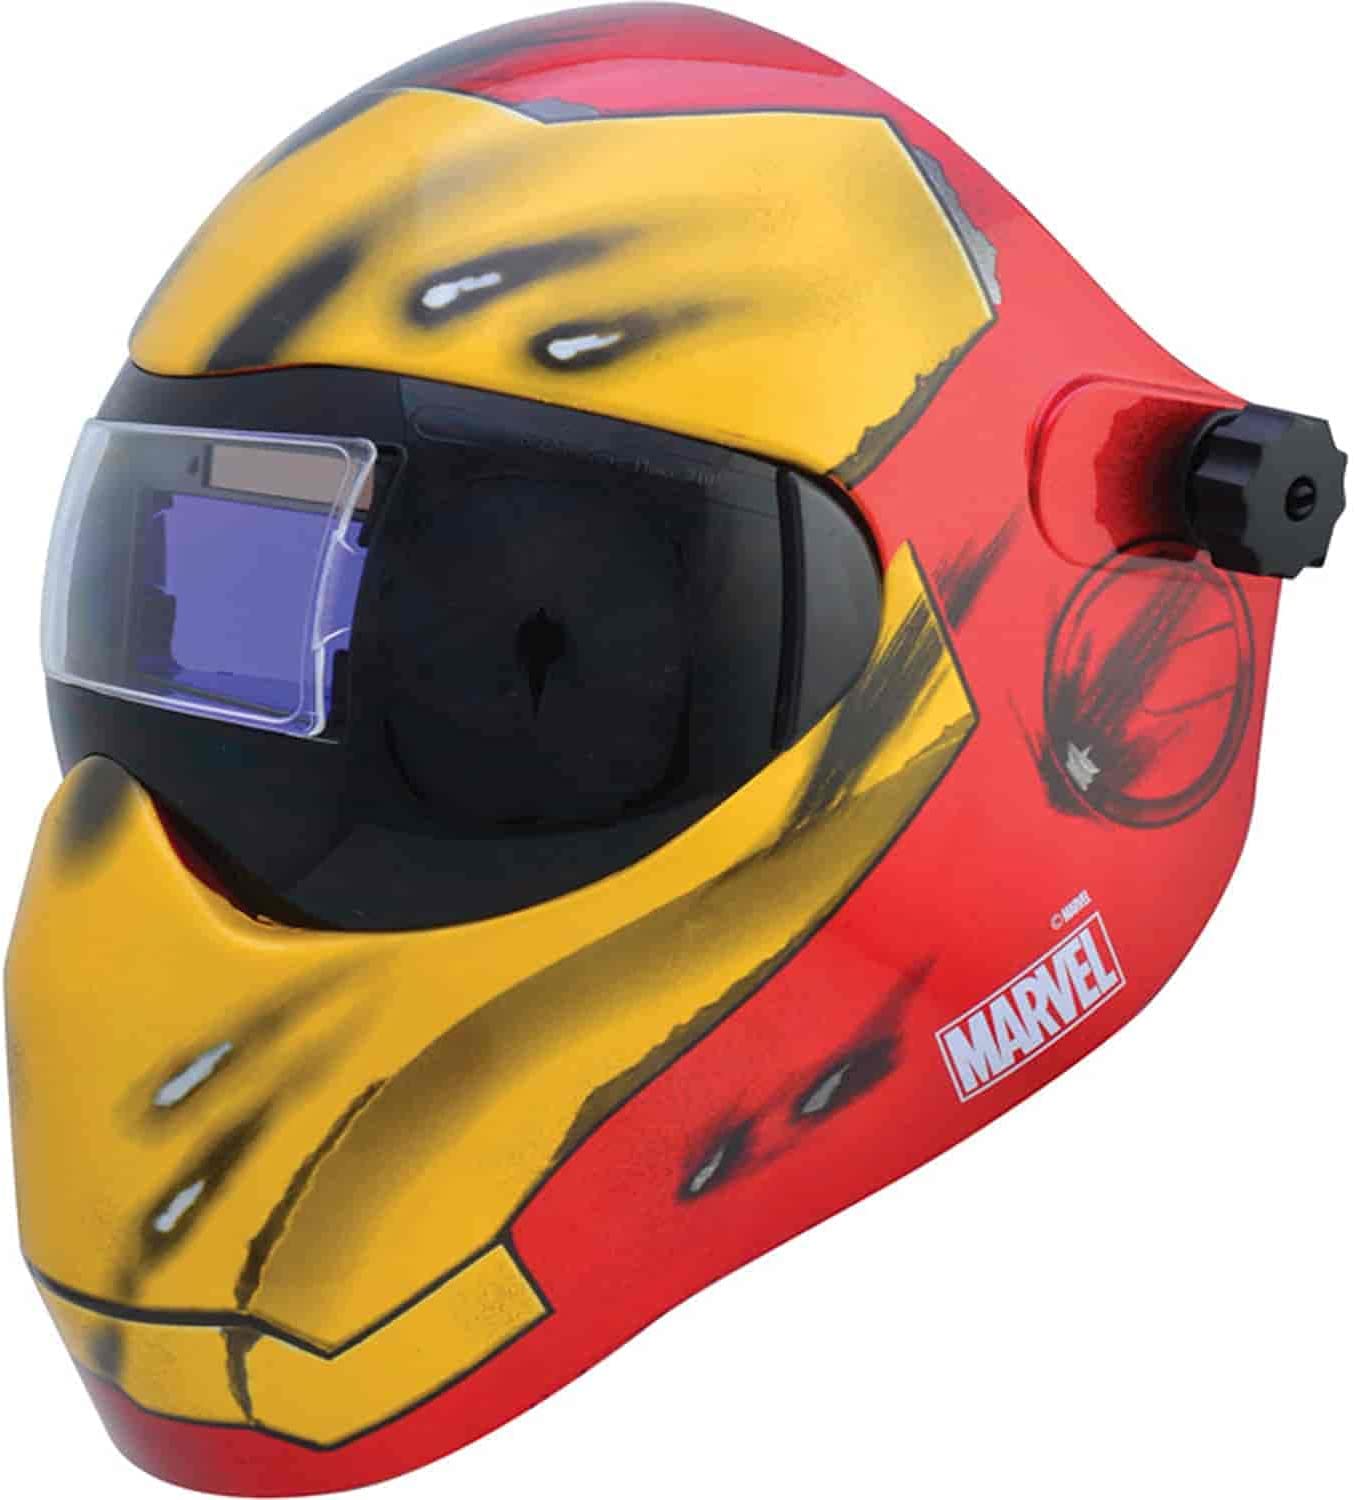 Save Phace Auto-Darkening Welding Helmet